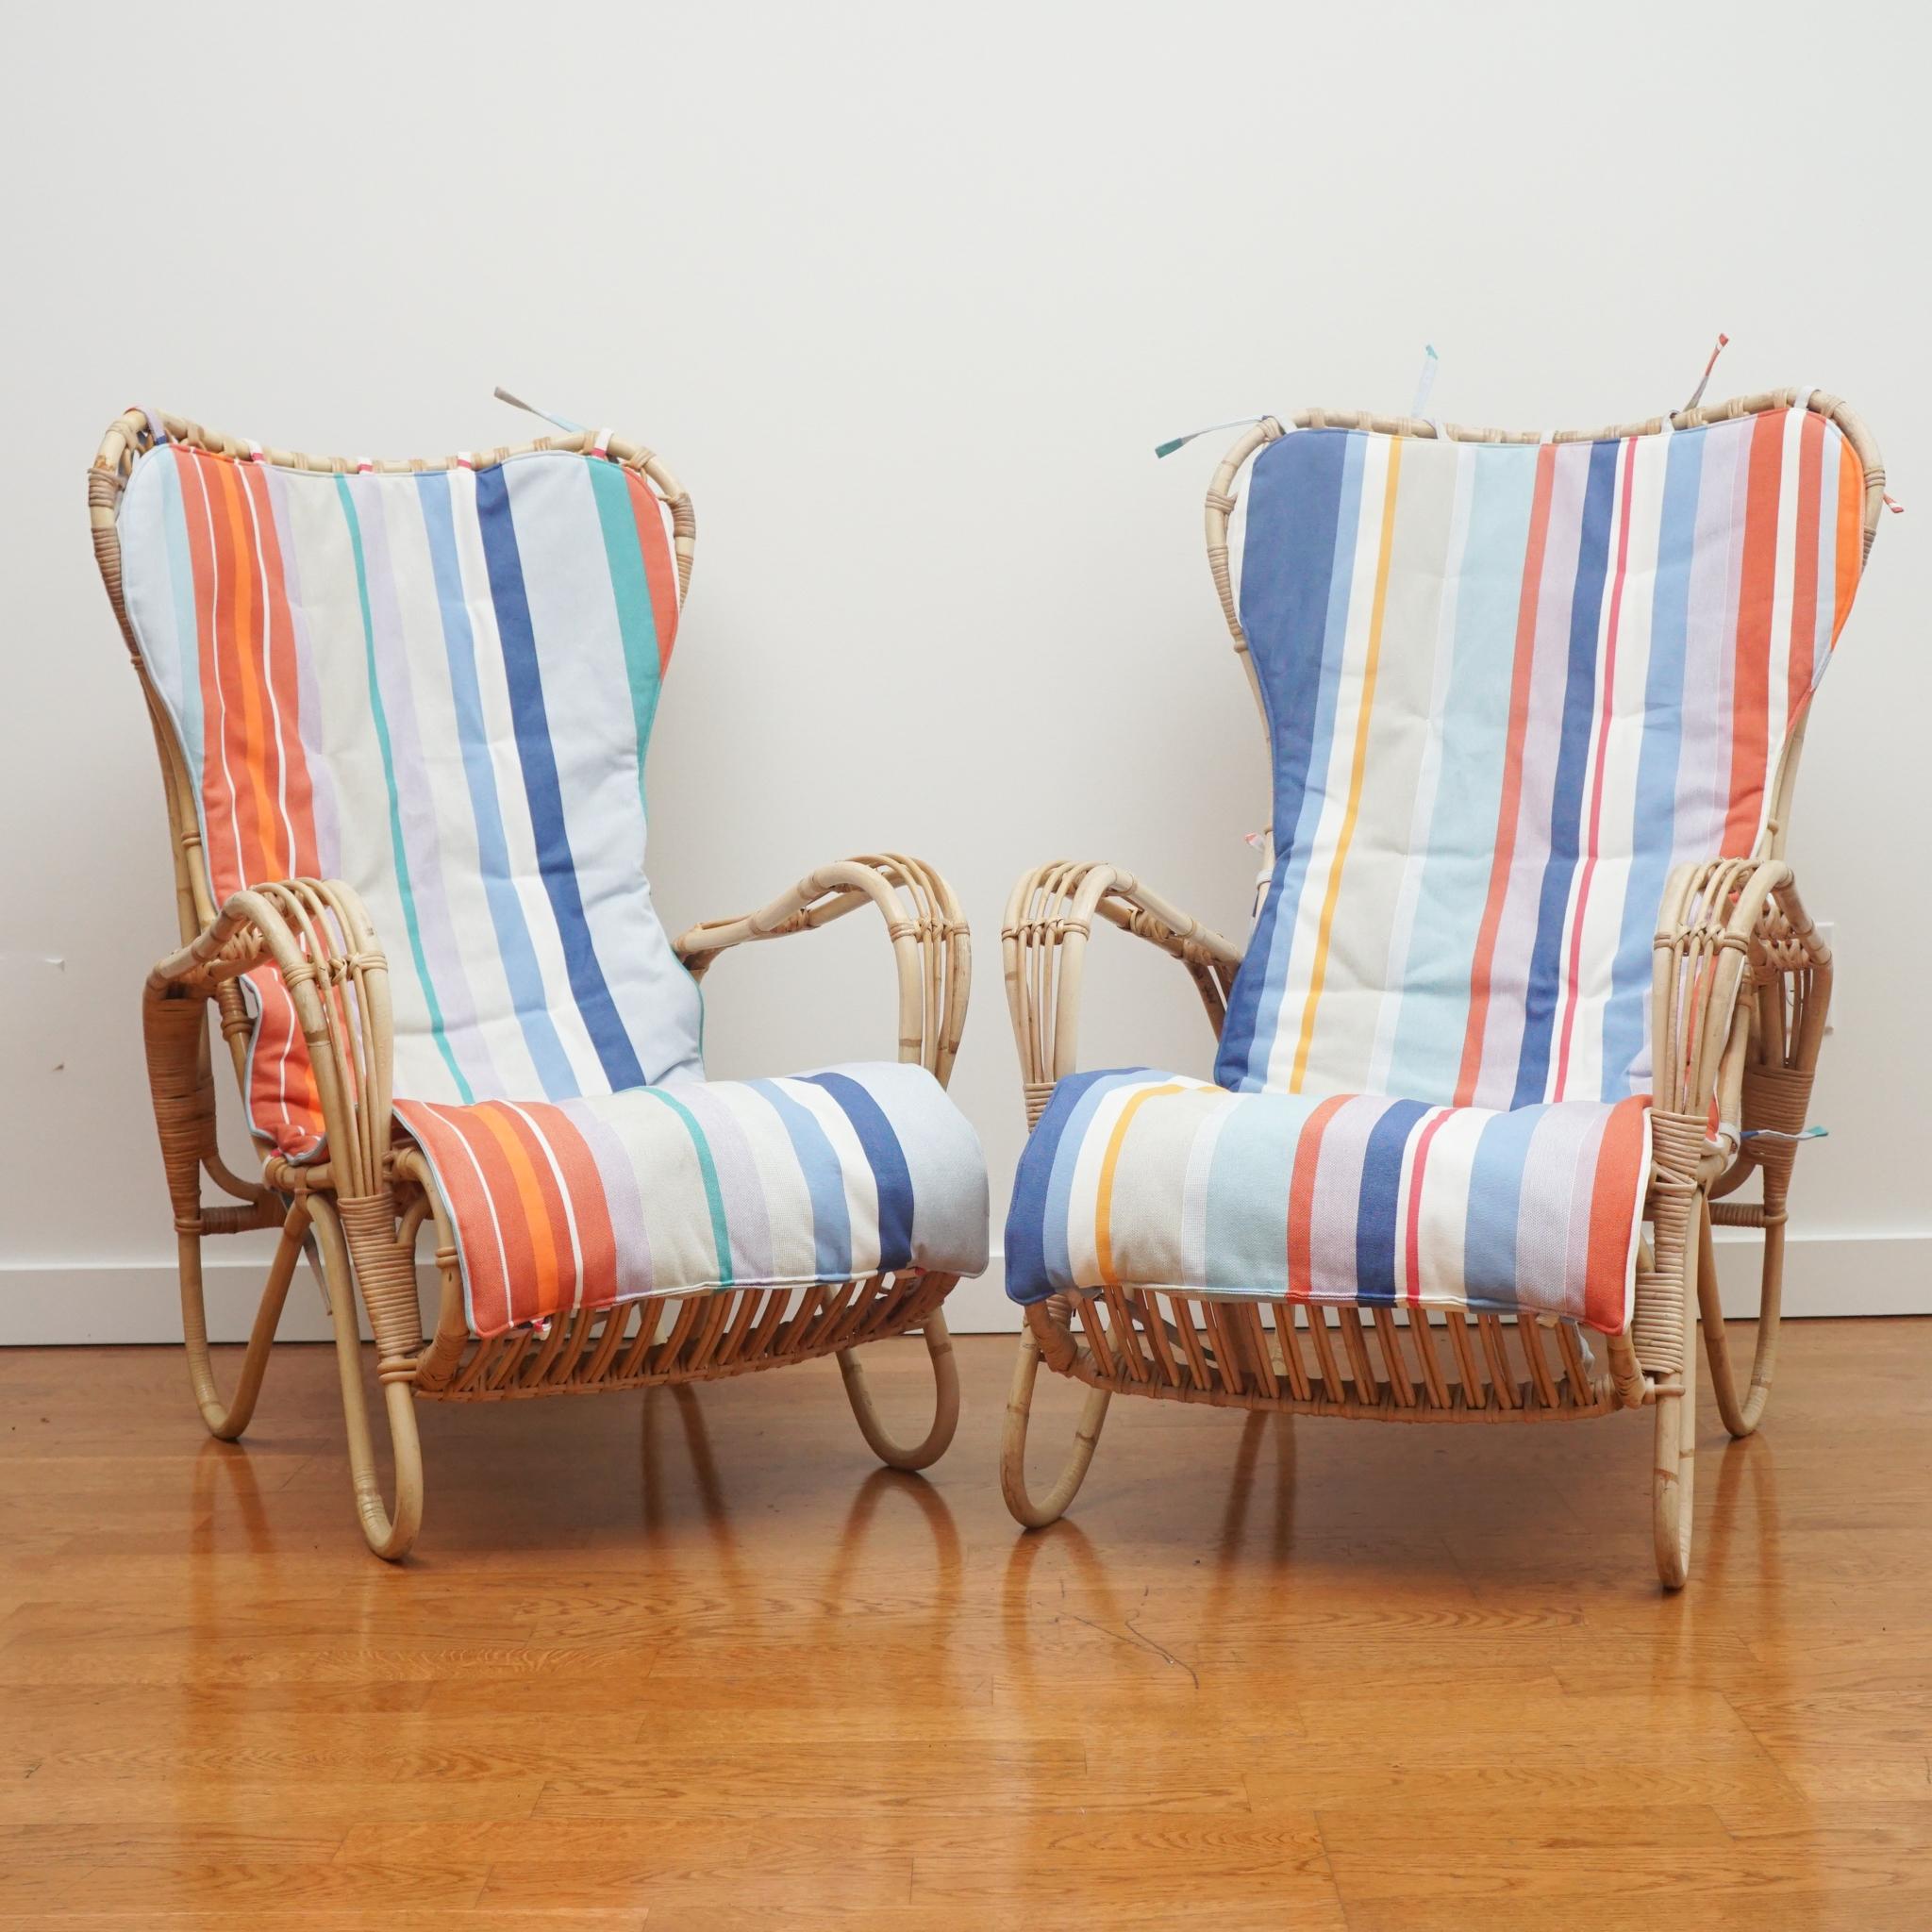 Cette paire de chaises longues en rotin est un nouvel arrivage de Suède. Fabriquées dans les années 1950, les deux chaises sont en très bon état et ne présentent aucun signe majeur d'usure, de dommage ou de réparation. Nous avons remplacé les